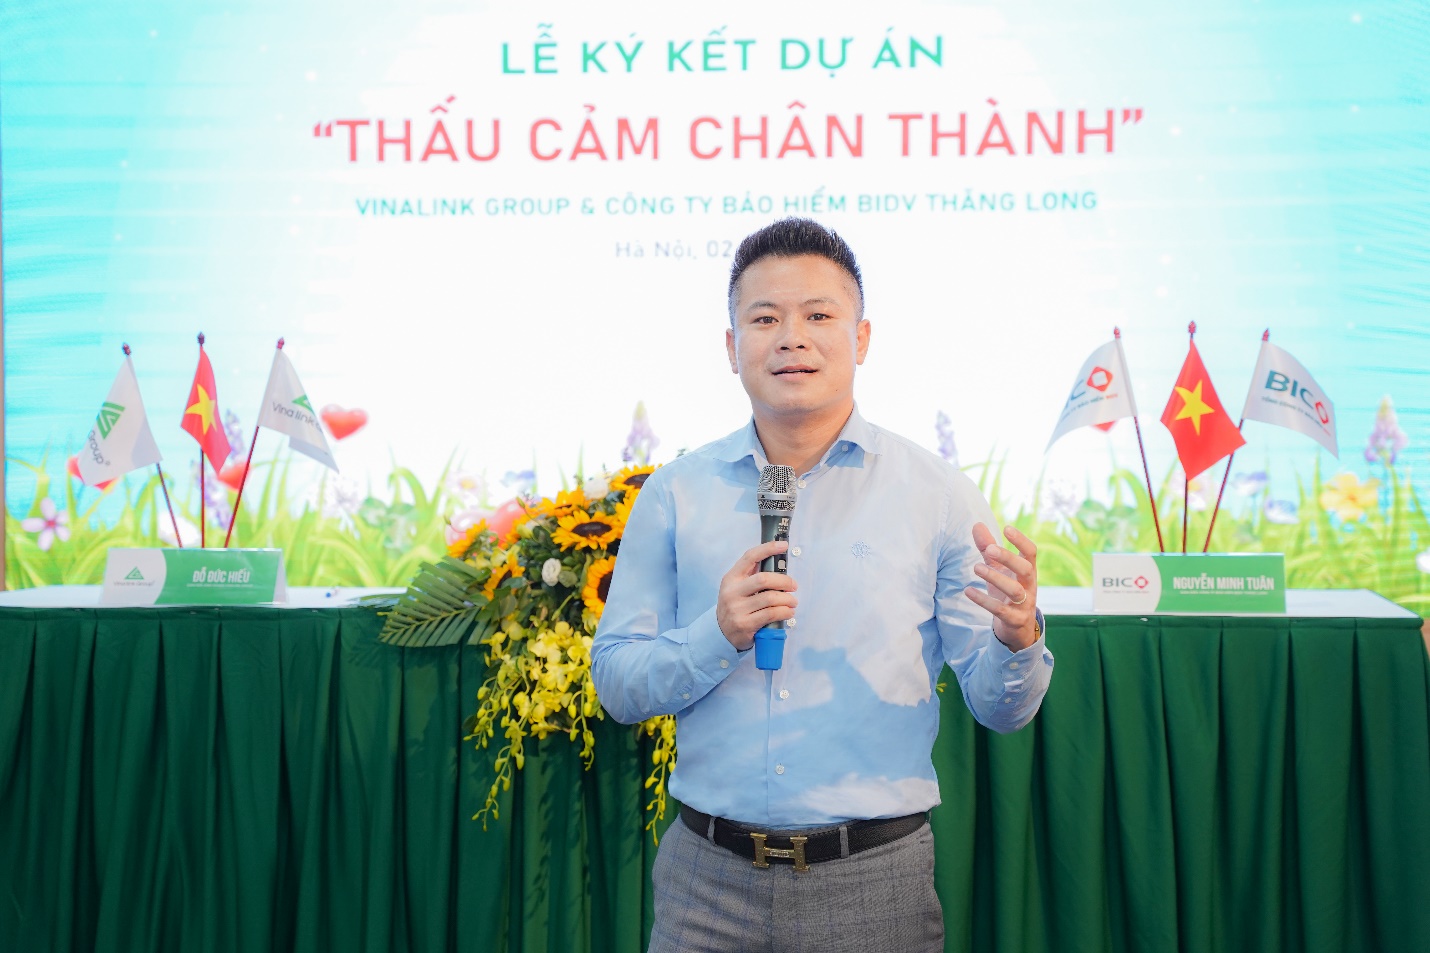 Ông Nguyễn Đức Anh, Tổng Giám đốc Vinalink Group phát biểu tại Lễ ký kết hợp tác với Công ty Bảo hiểm BIDV Thăng Long.